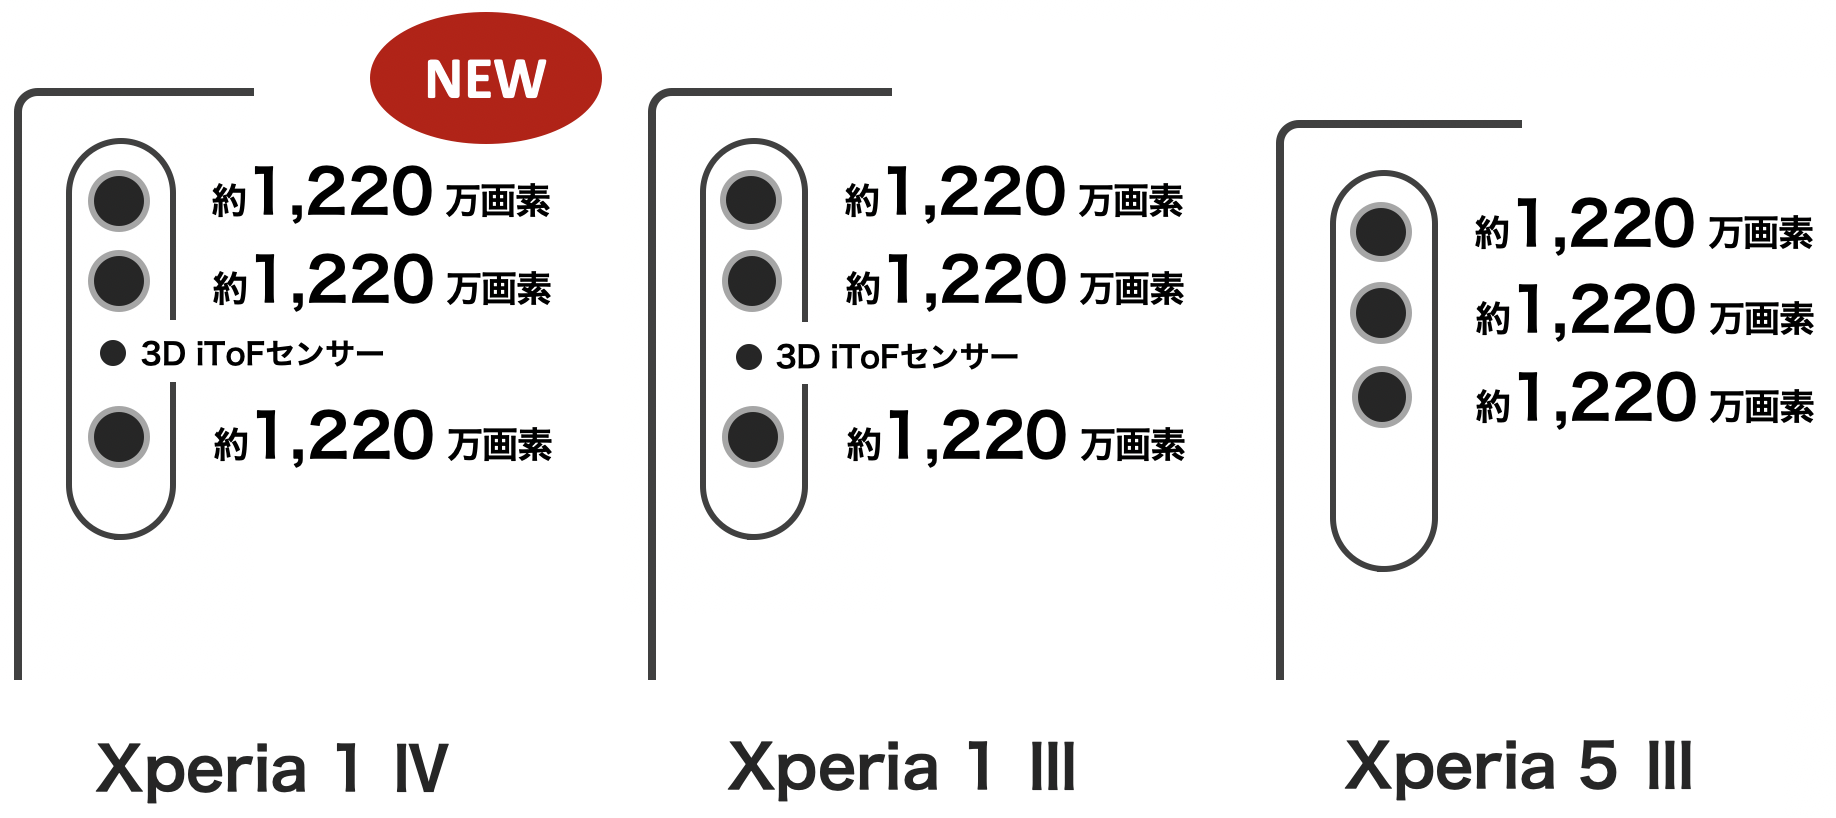 Xperia 1 IV / Xperia 1 III / Xperia 5 III のカメラの画素数比較